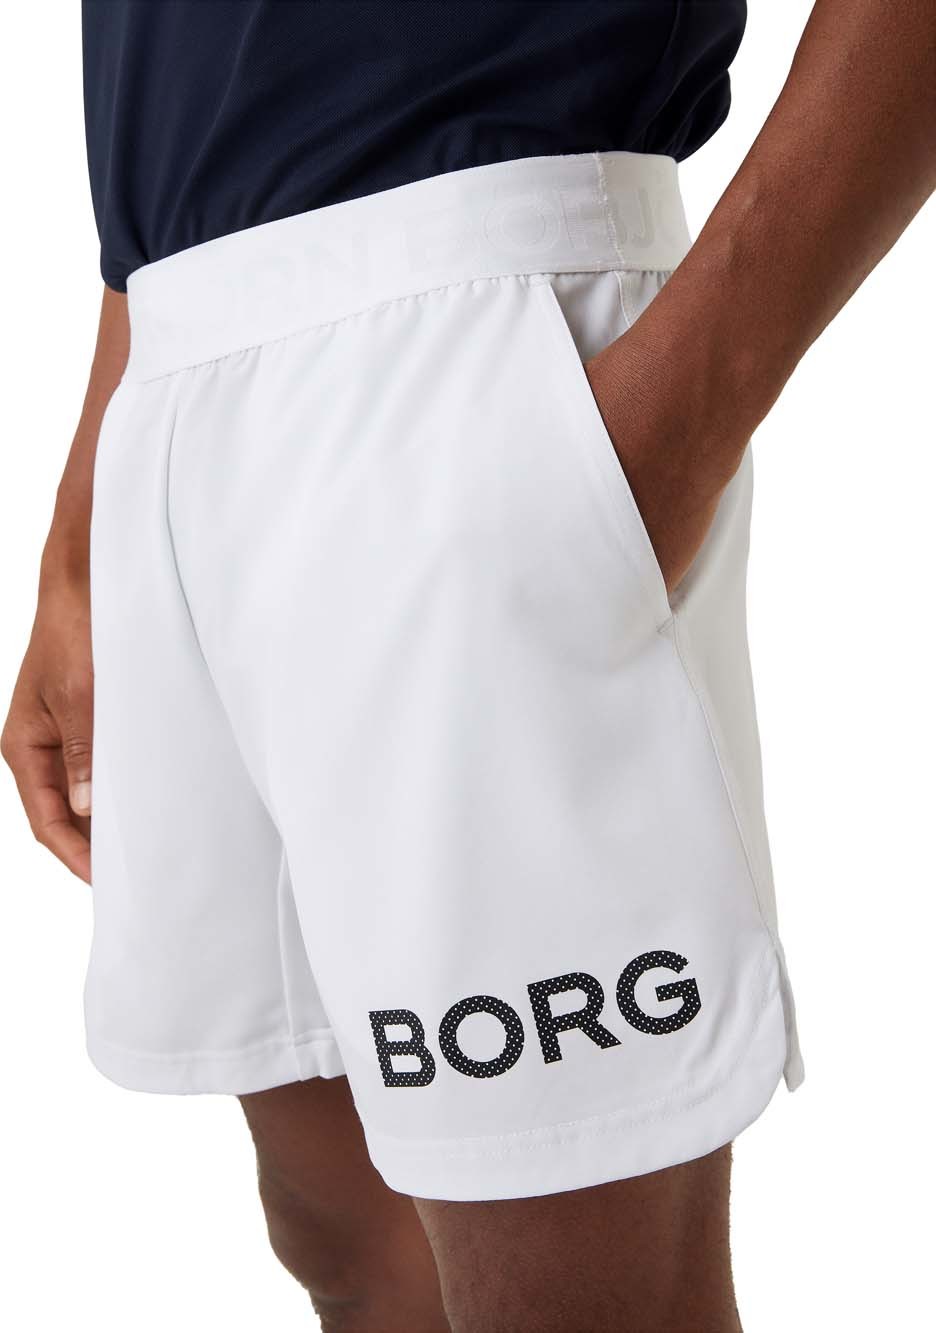 Men's Borg Short Shorts Brilliant White